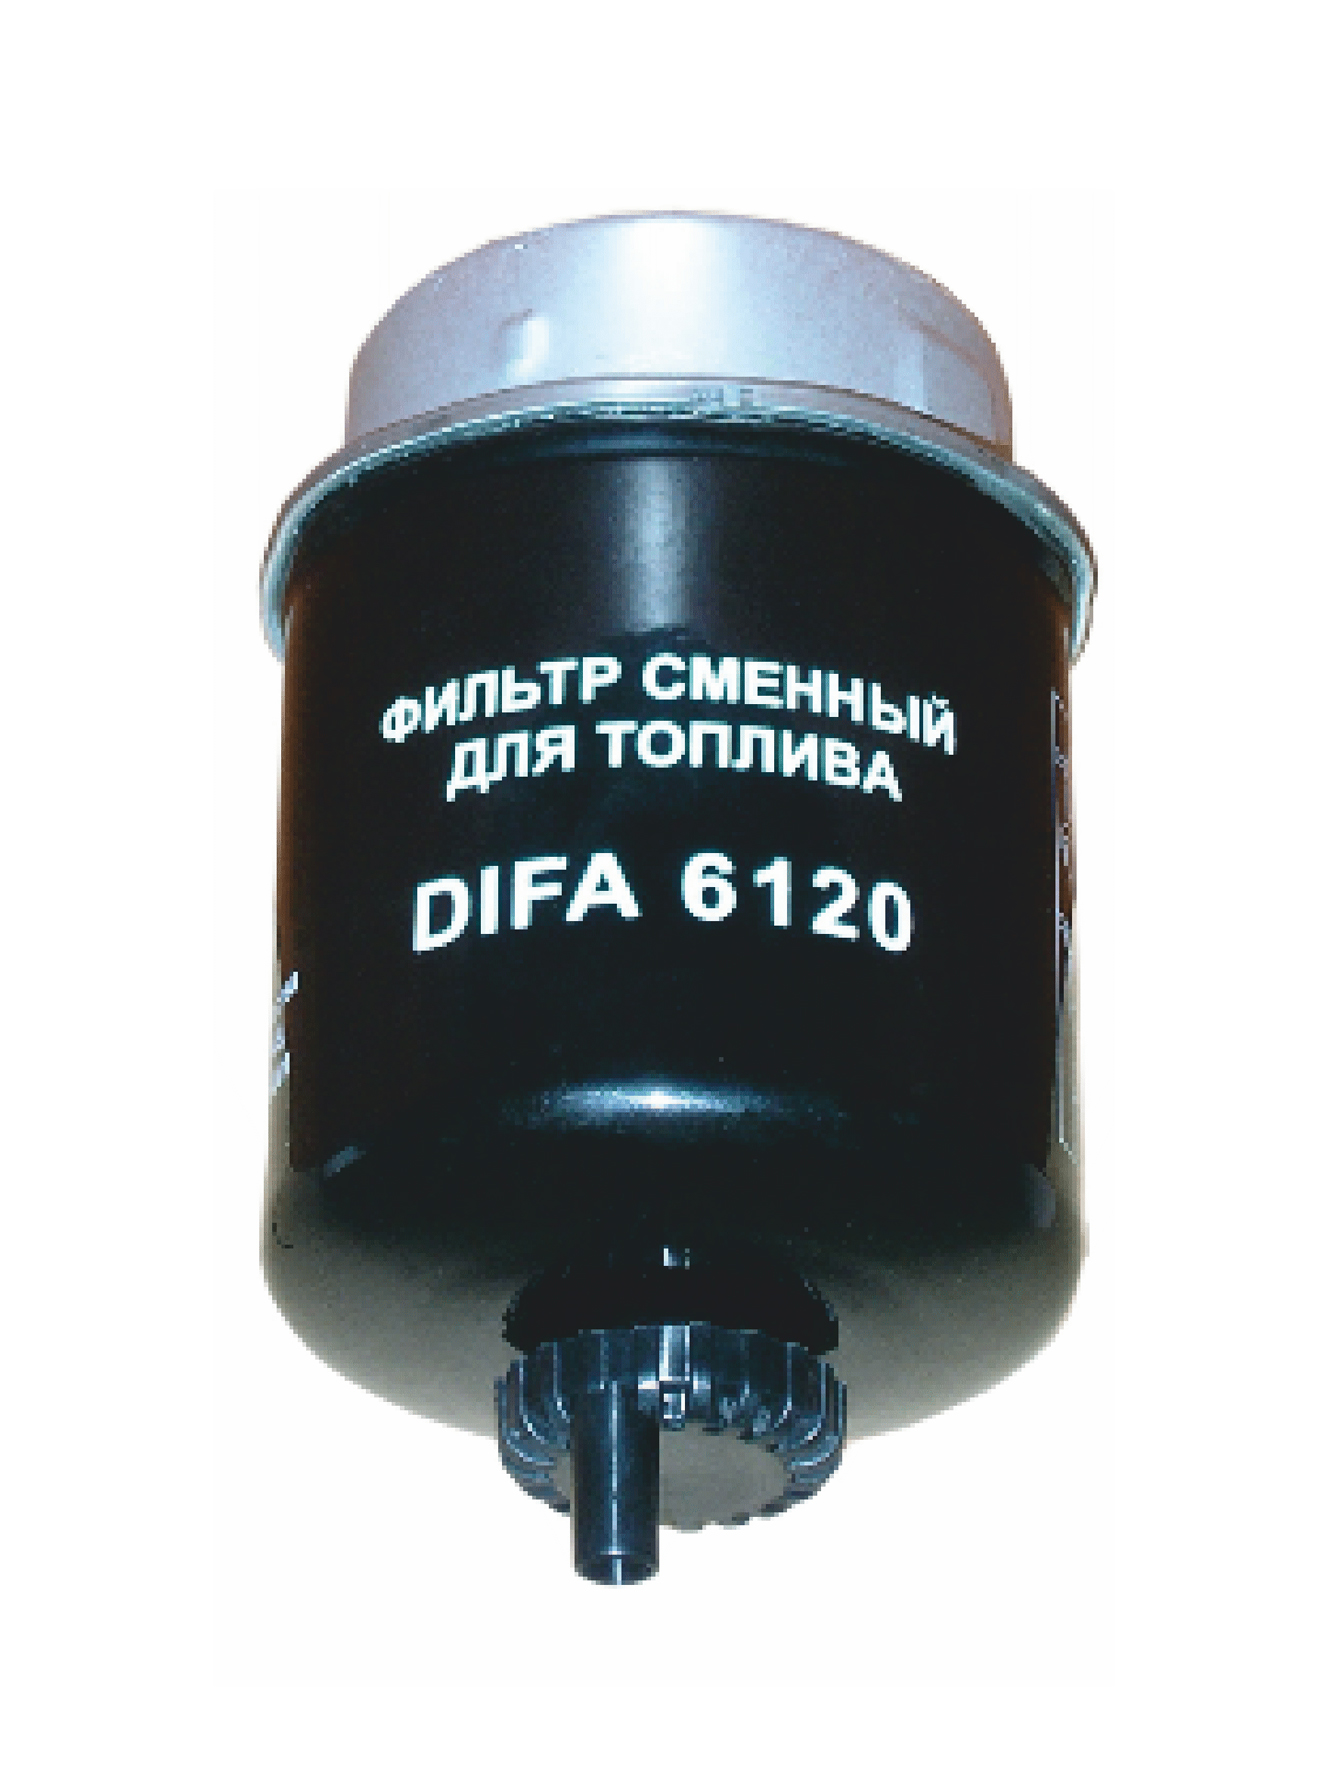 Т6120 Фильтр тон.оч.топлива ДИФА (32925694WK8113) DIFA DIFA6120